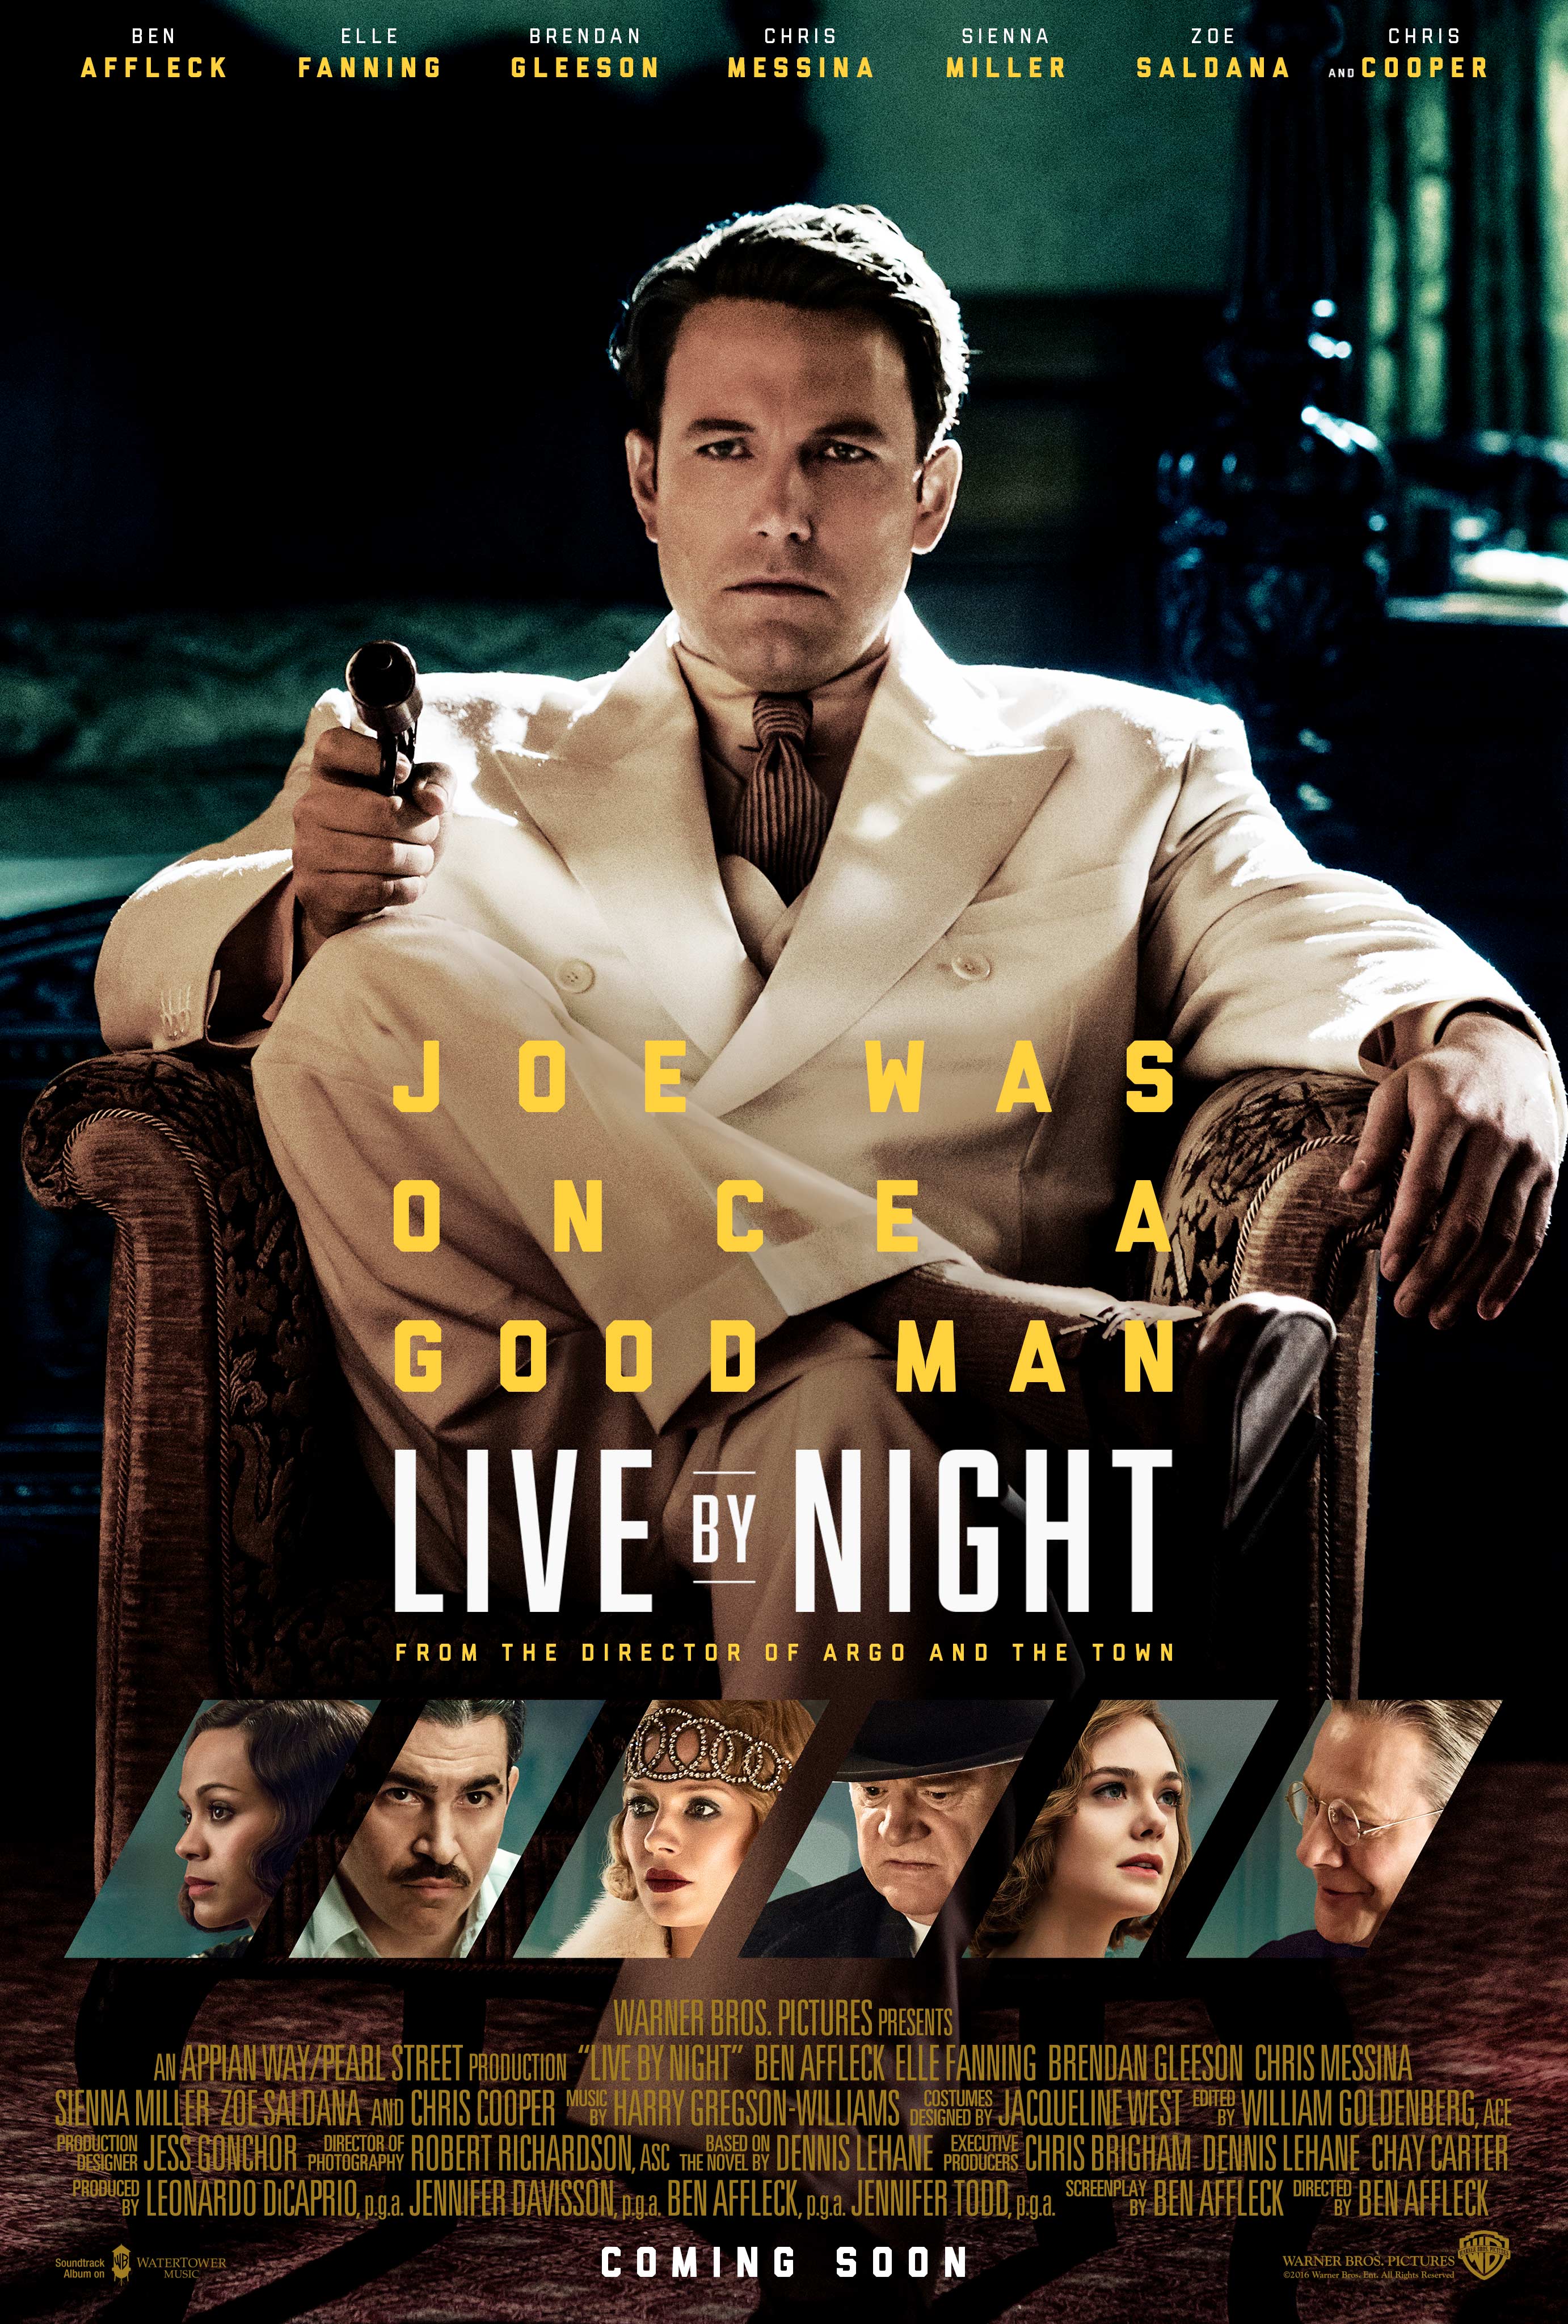 A Lei da Noite | Filme dirigido por Ben Affleck ganha novo pôster